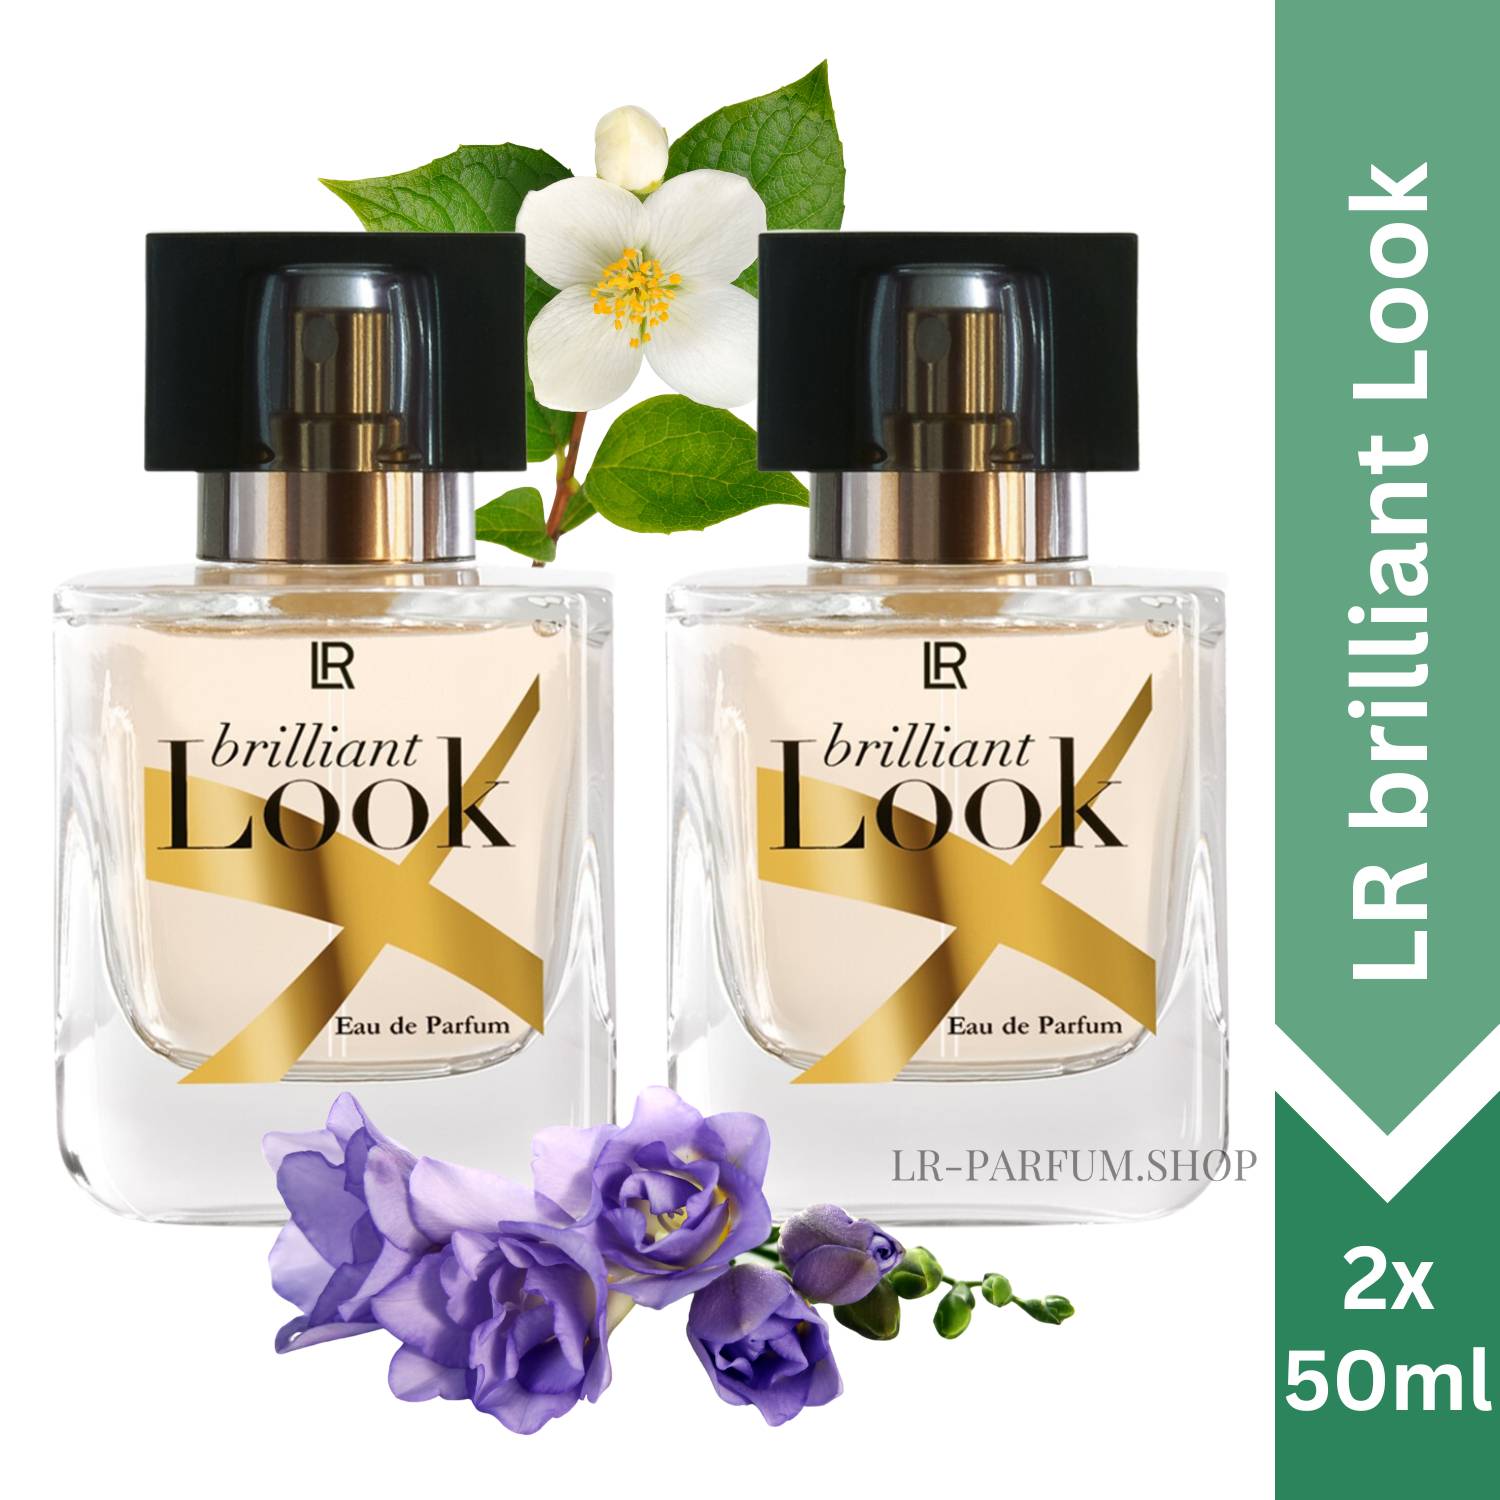 LR Brilliant Look - Eau de Parfum 50ml, 2er Pack (2x50ml) - LR-Parfum.shop